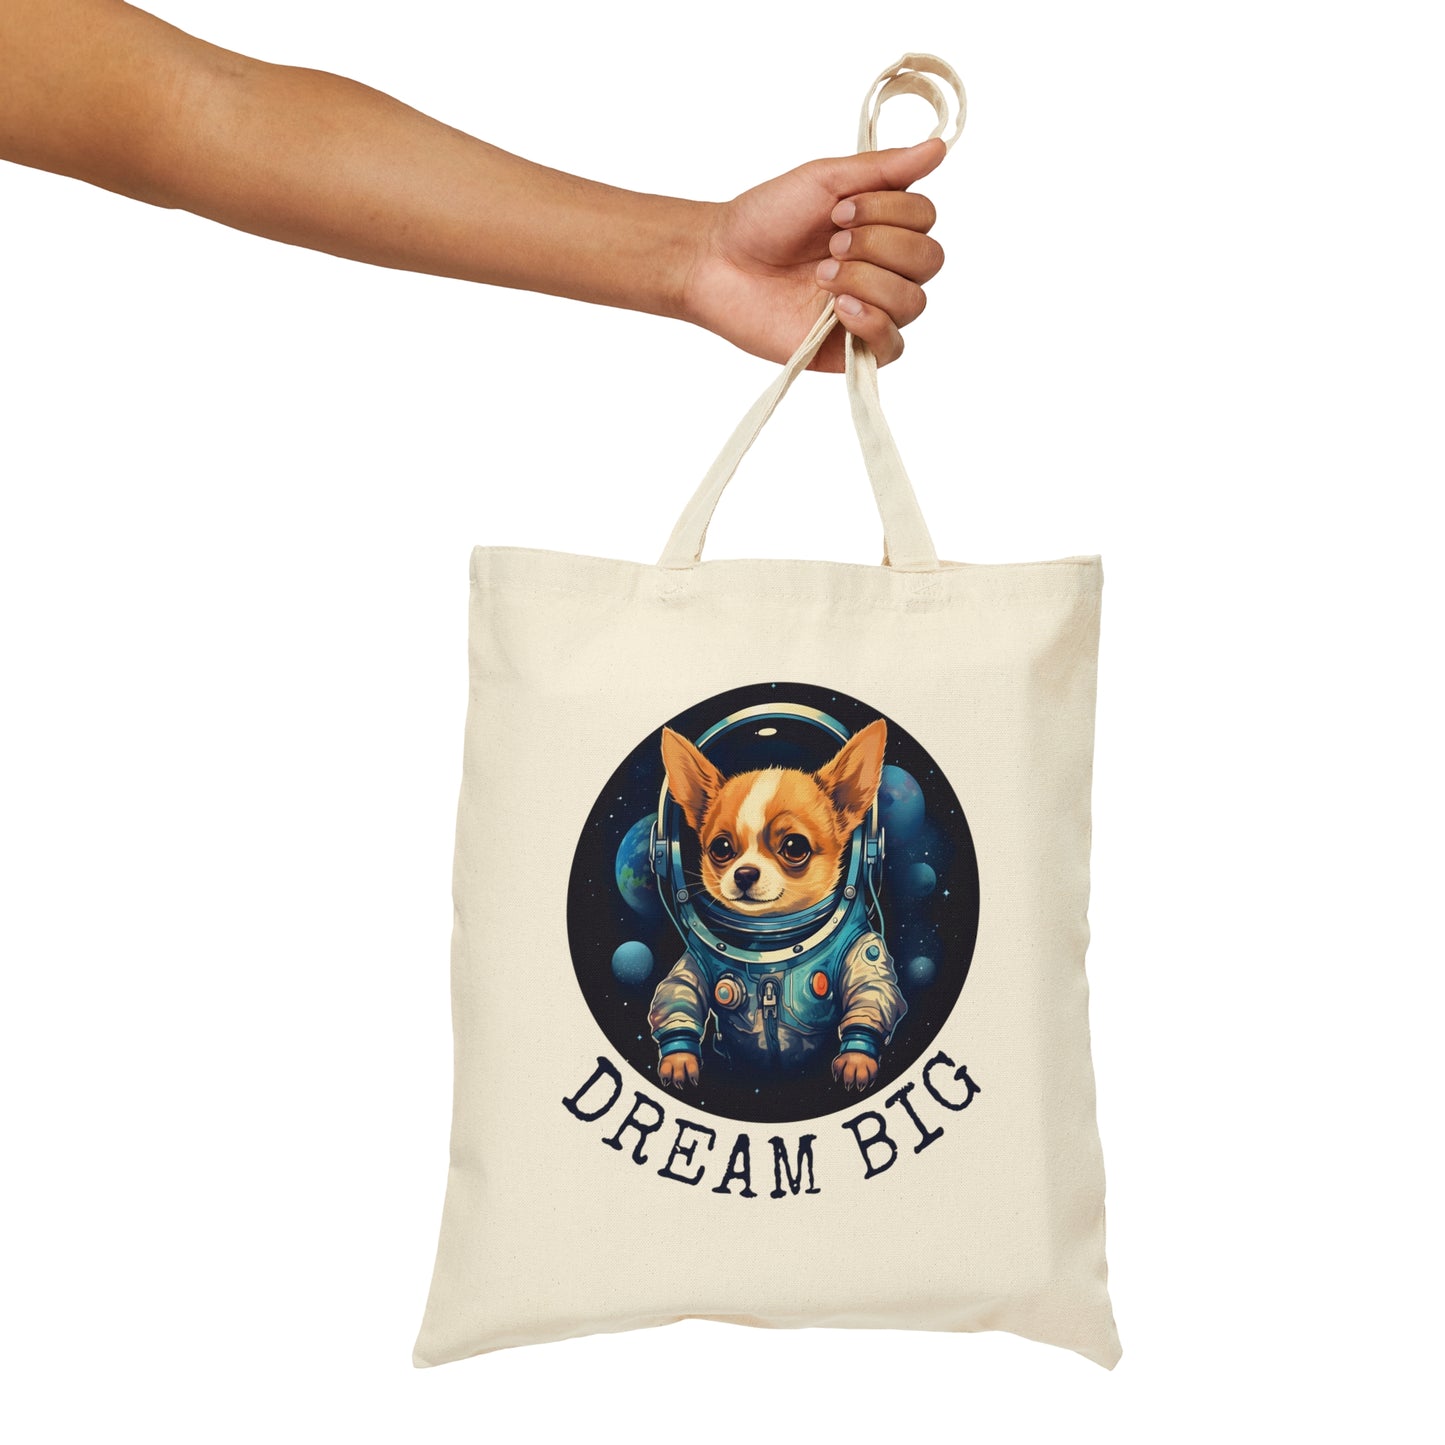 Dream Big tote bags